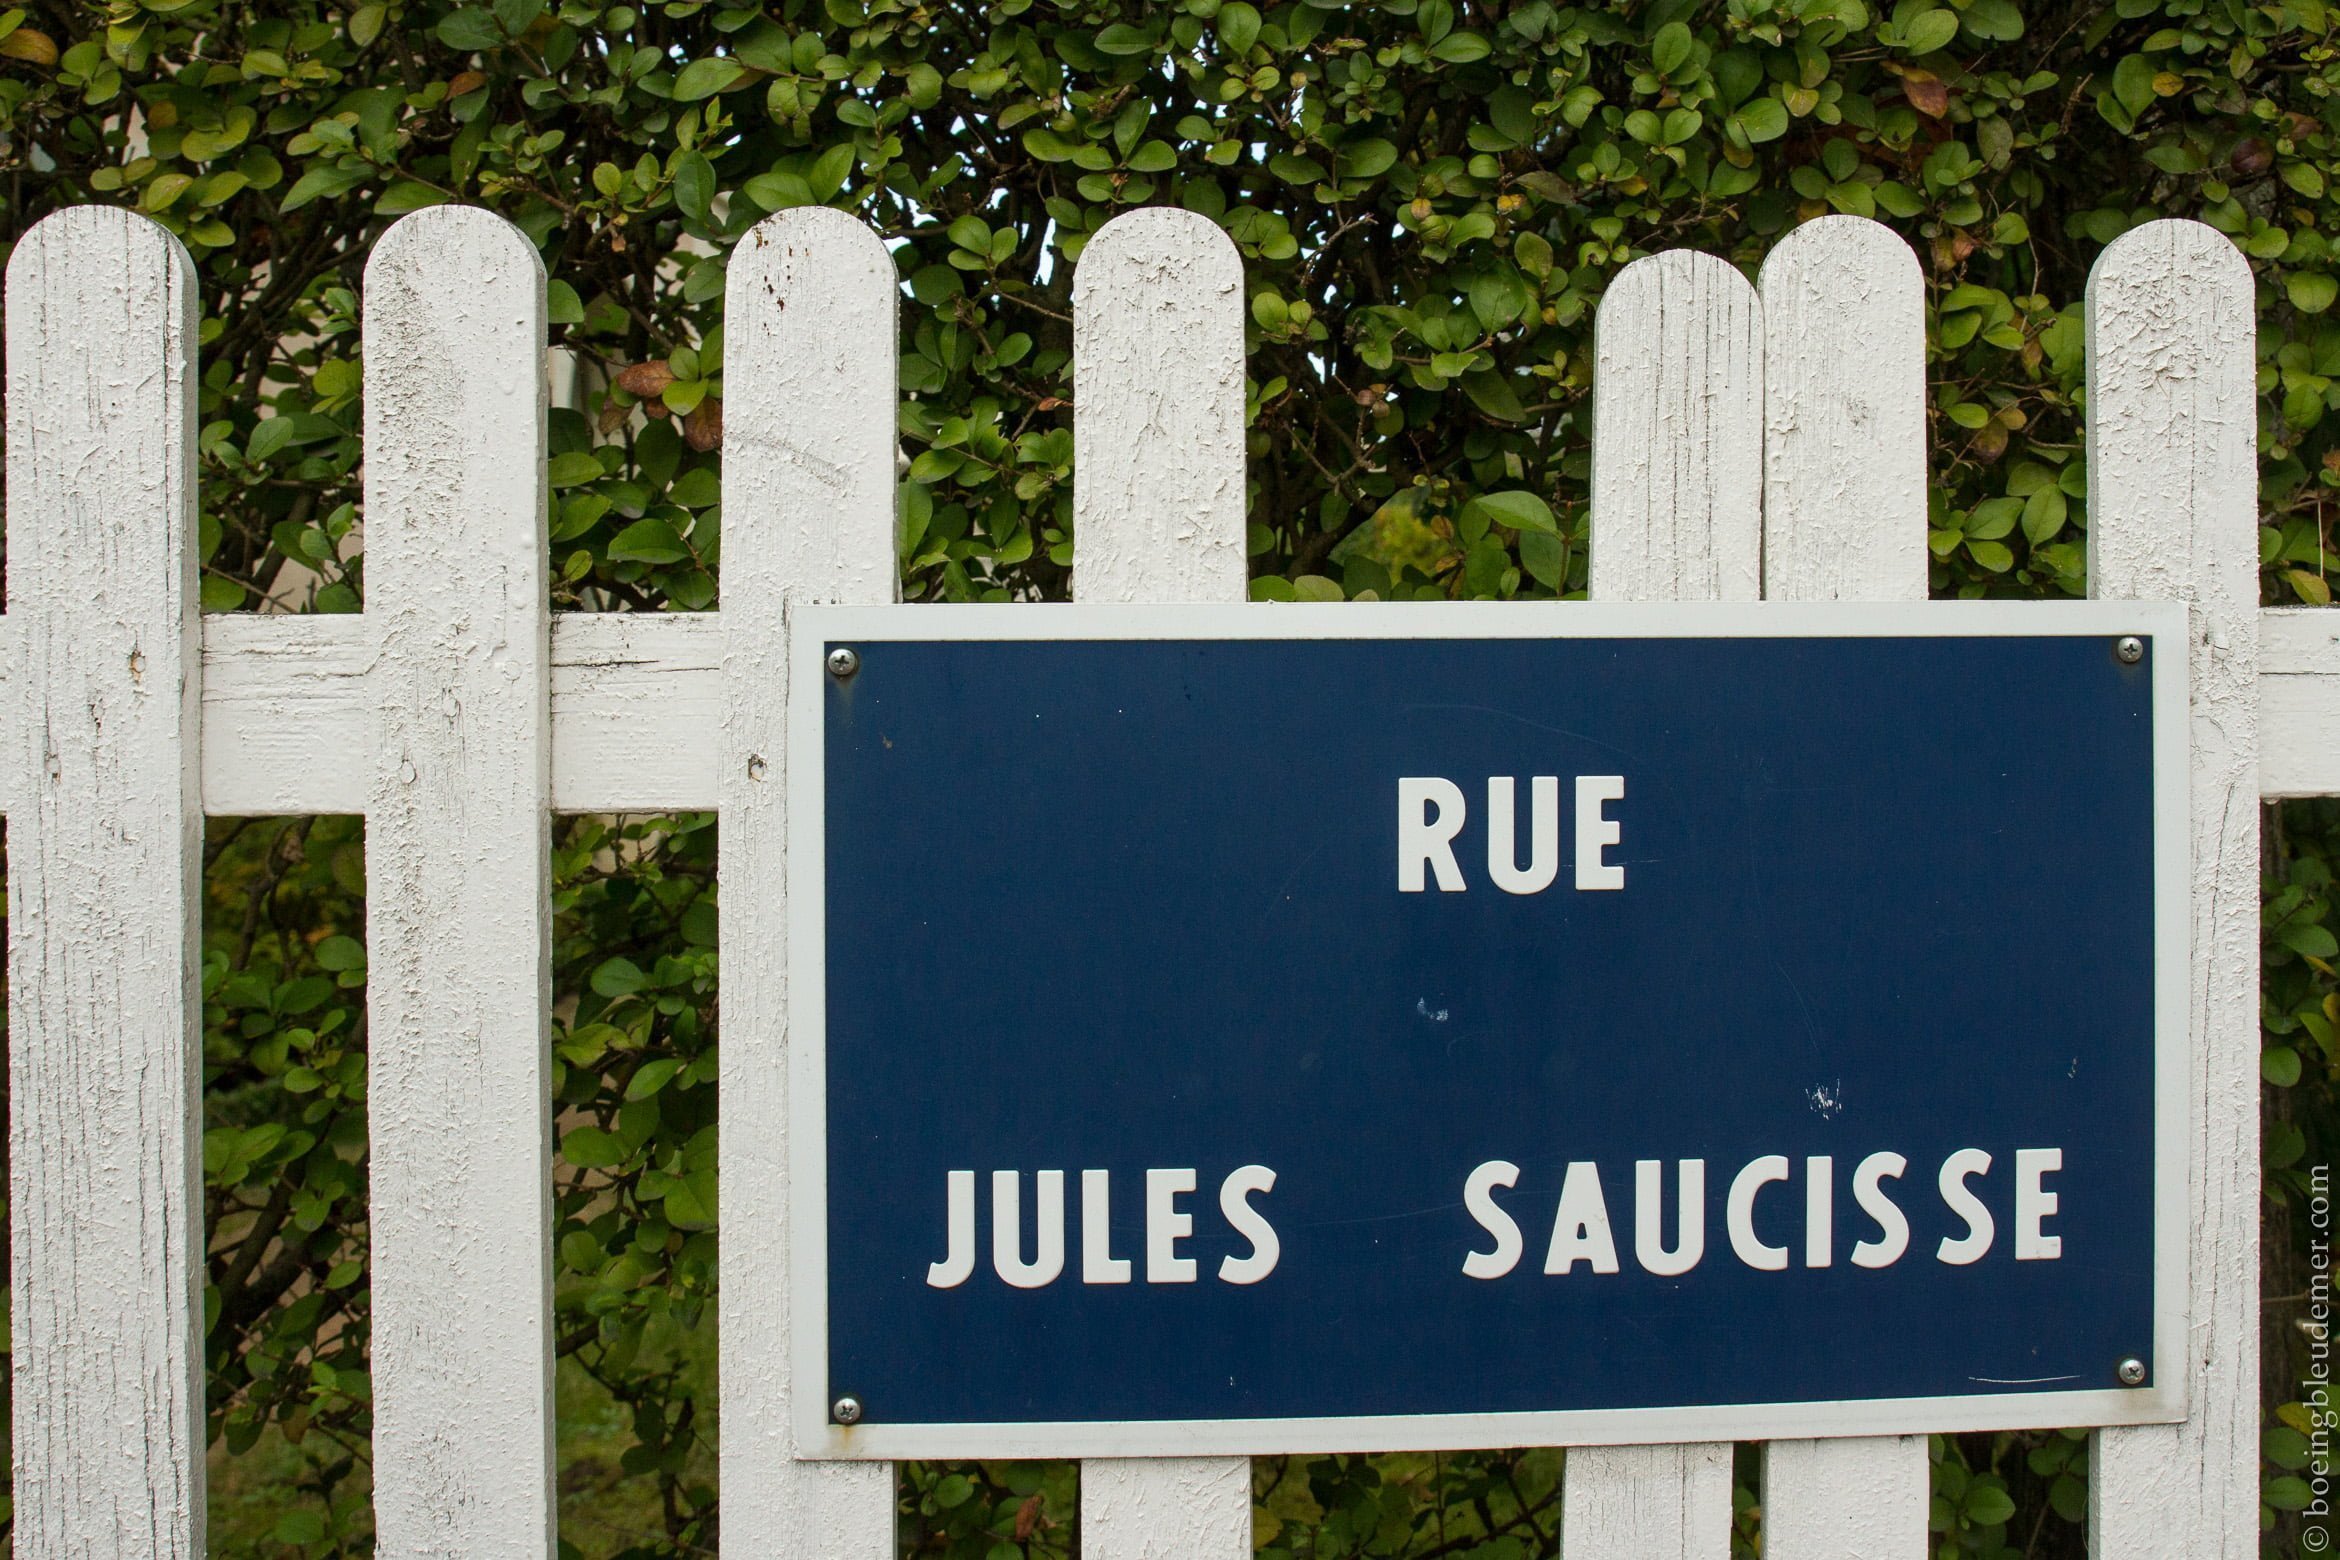 Un weekend à Deauville: Rue Jules Saucisse